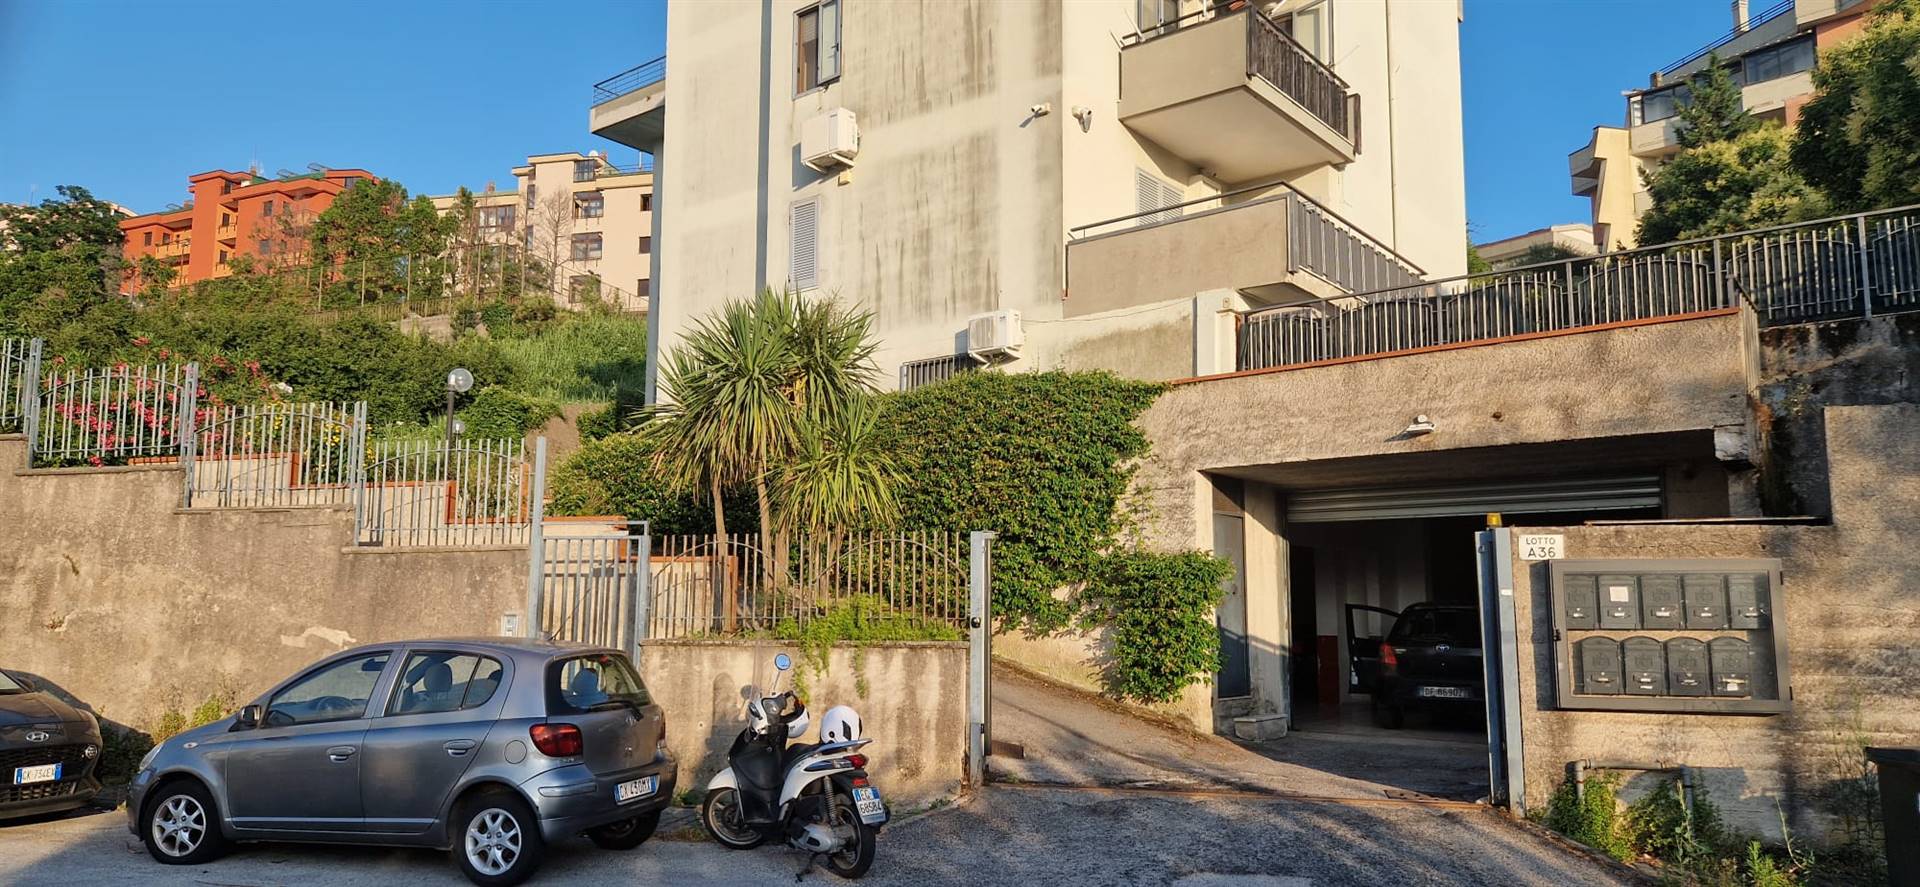 Salerno- Via Panoramica, in un contesto tranquillo, si vende grazioso monolocale. La soluzione internamente si compone da un'ampia camera, cucina e 